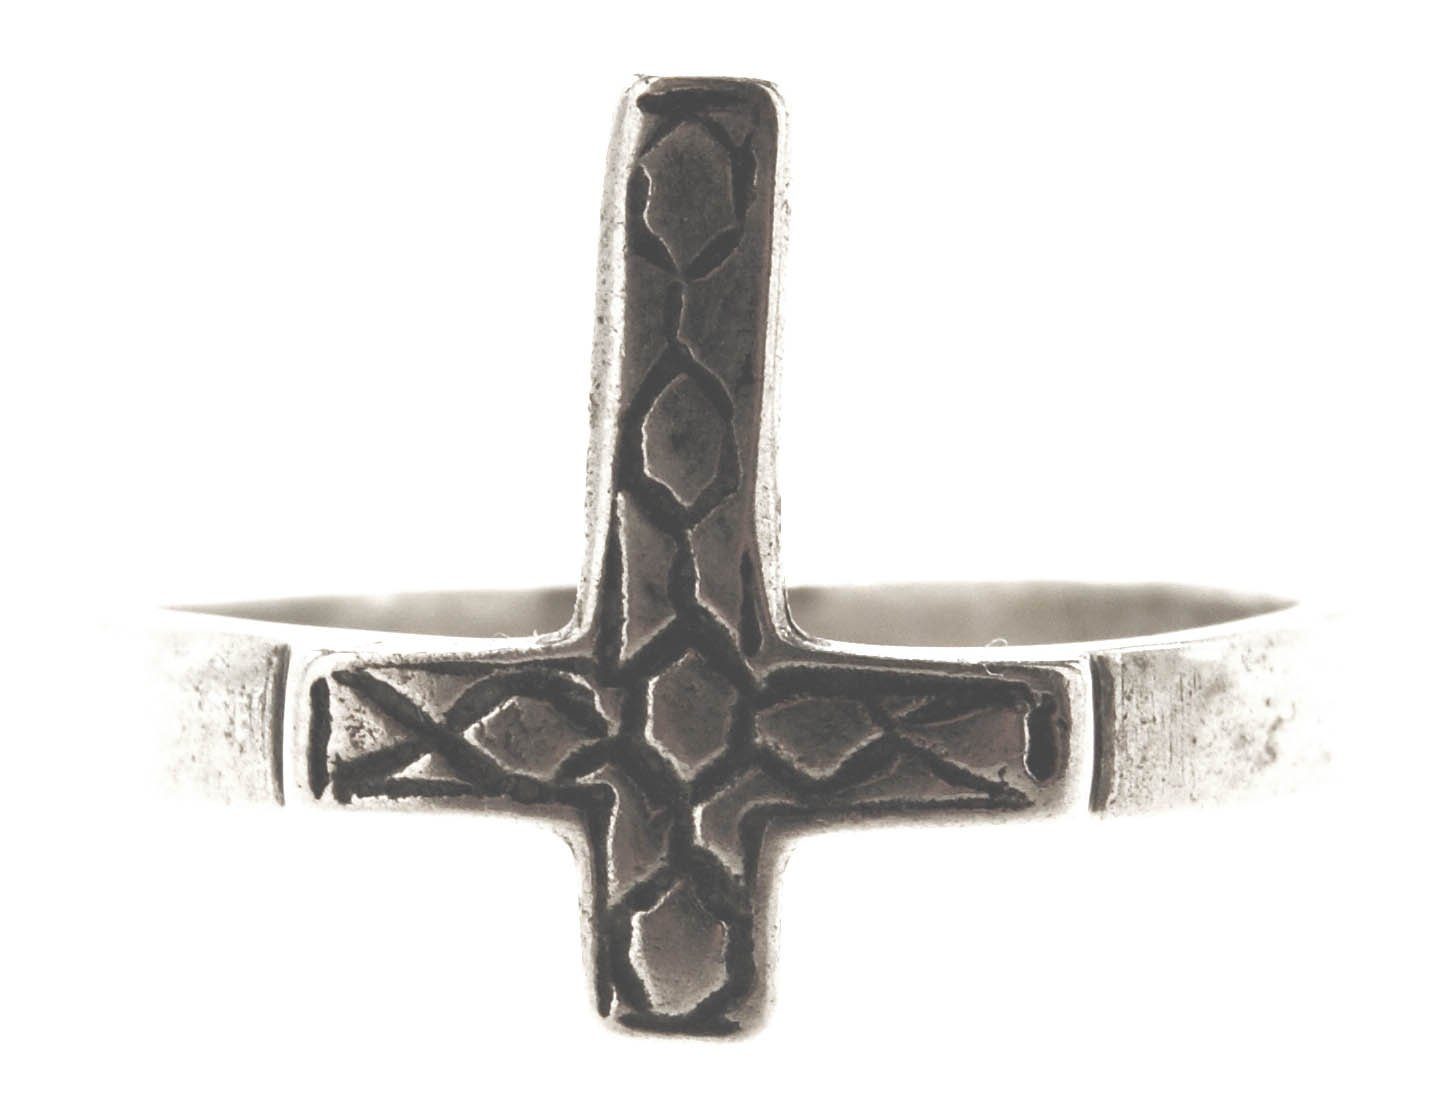 Silberring Kreuz, Kiss Ring Leather (kr17) 46-66 Gr. Silber of -